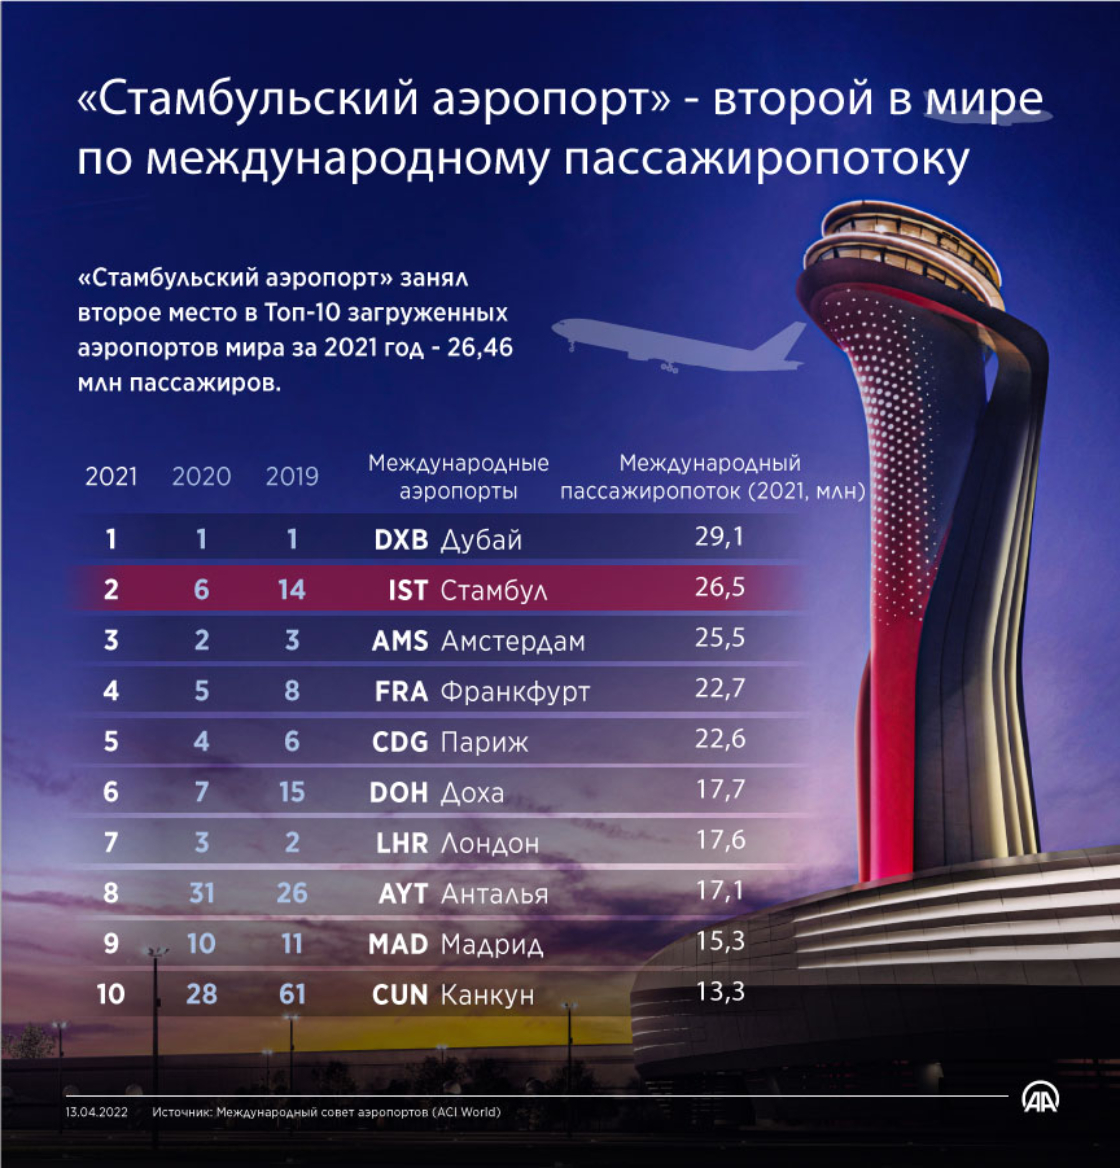 «Стамбульский аэропорт» - второй в мире по международному пассажиропотоку